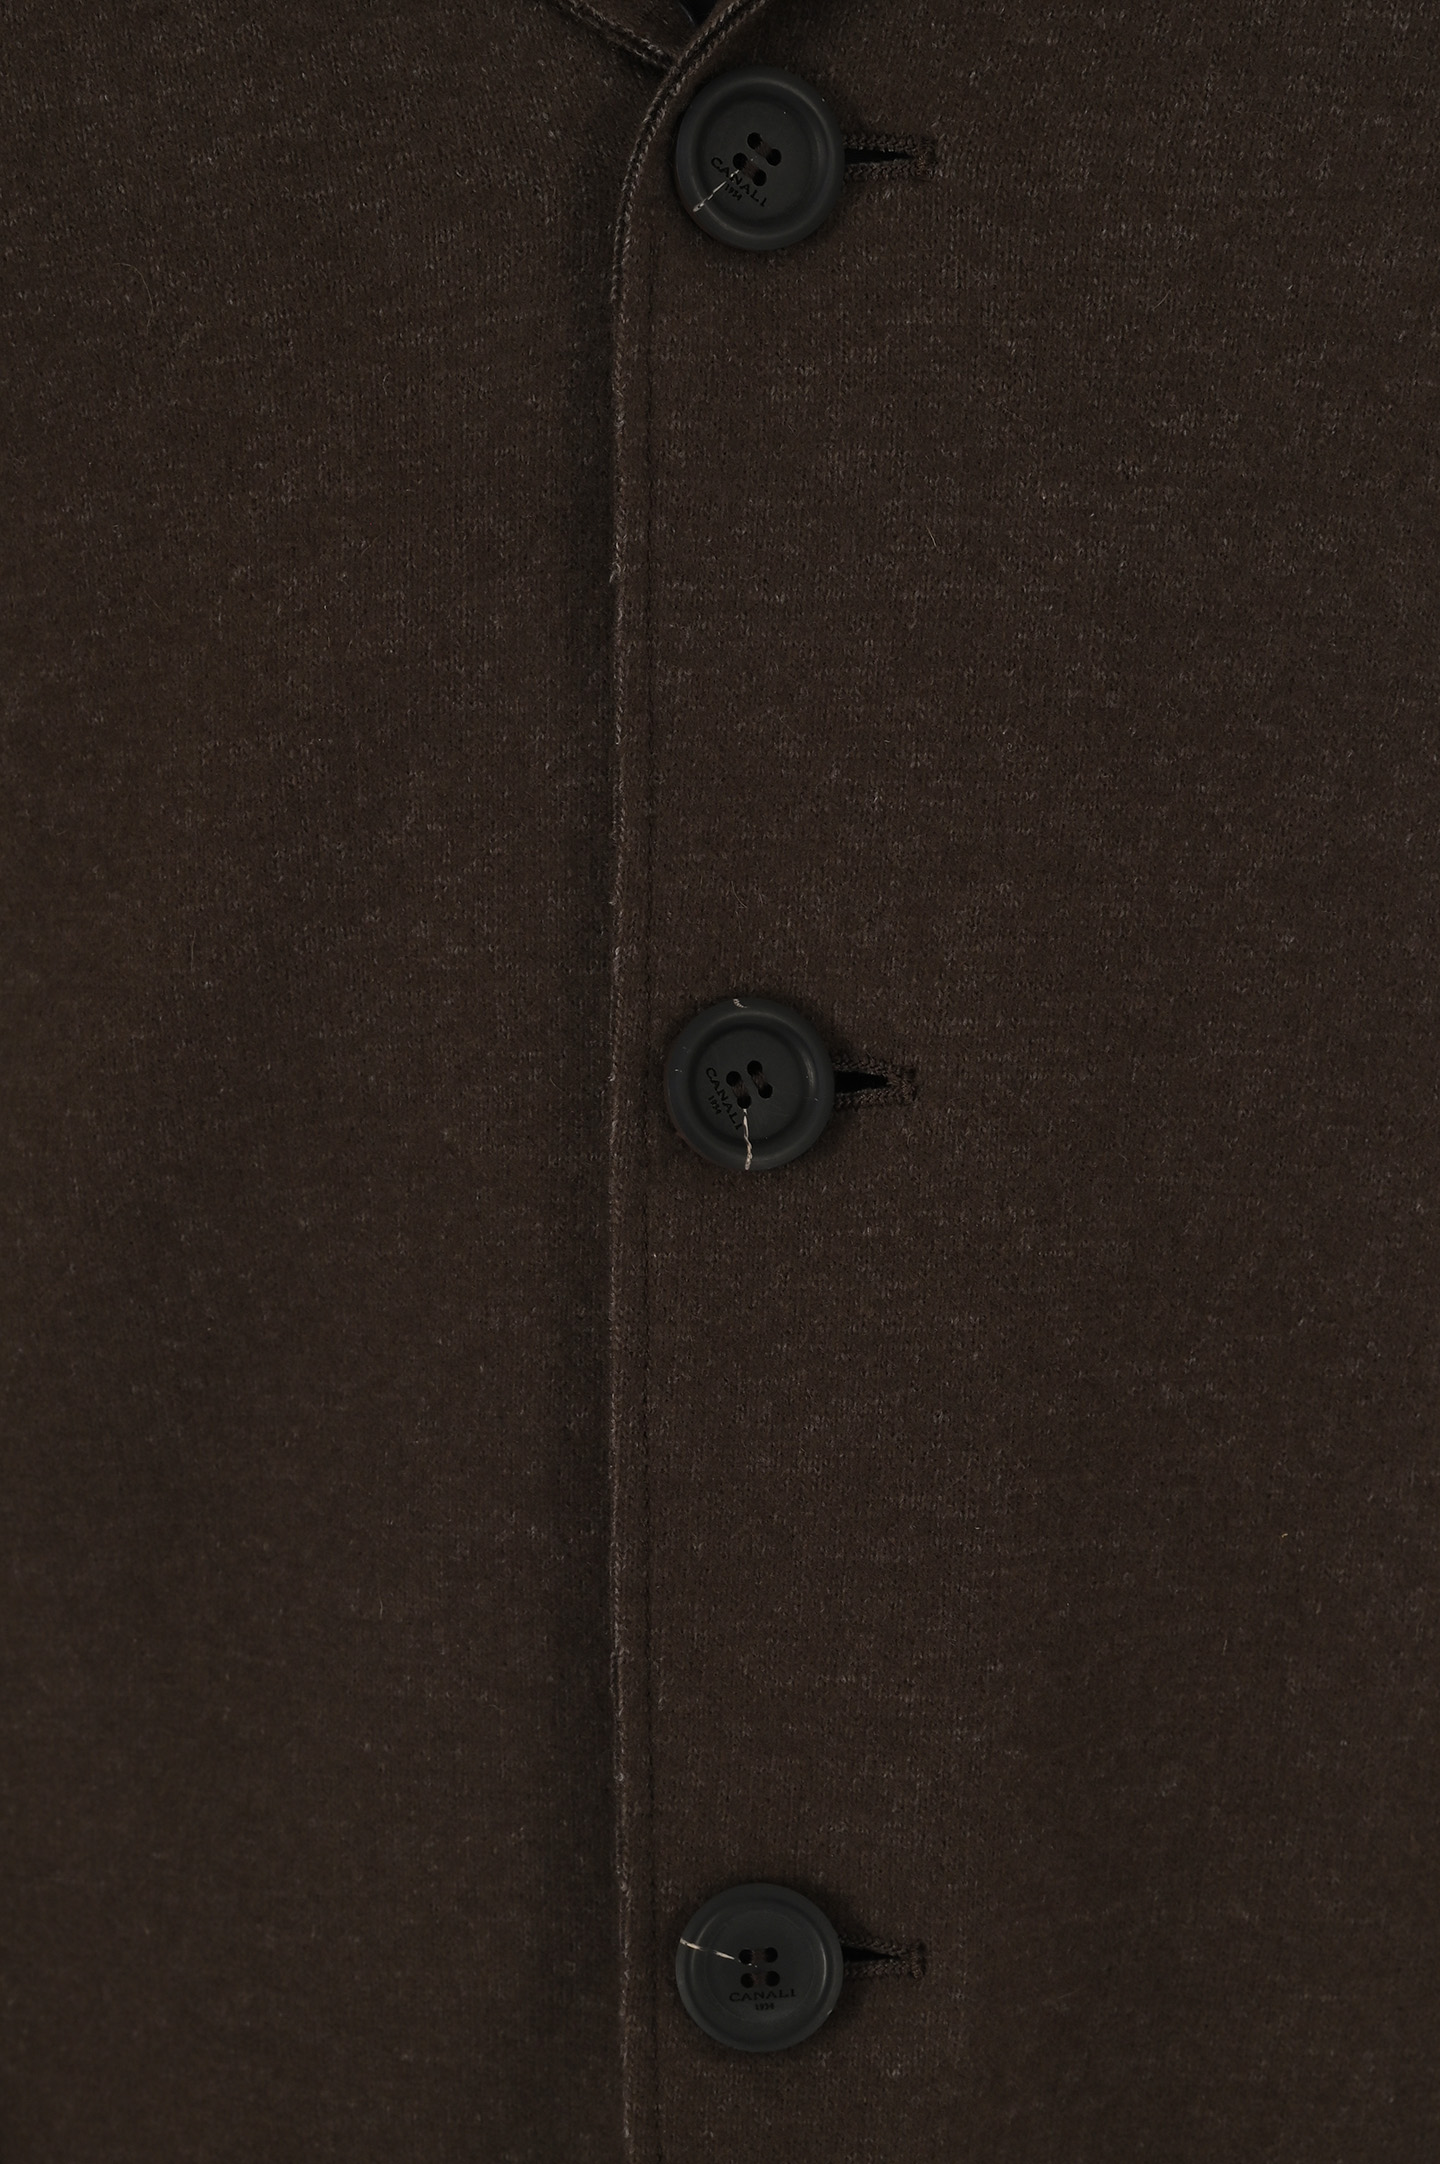 Пиджак CANALI JJ02854 J0151, цвет: Коричневый, Мужской